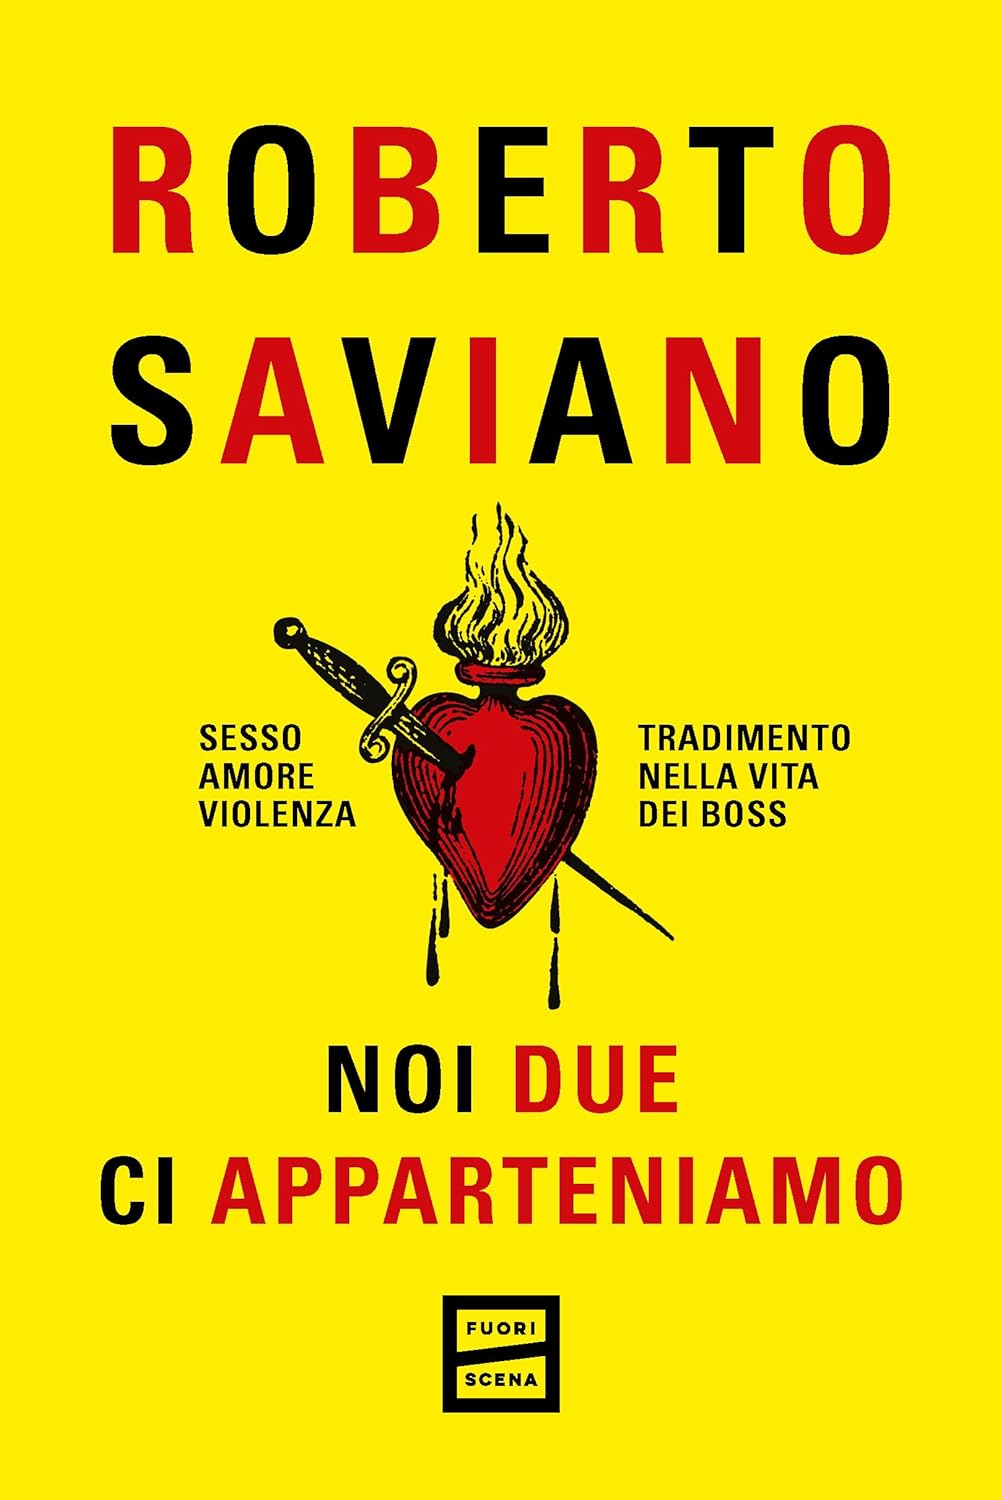 La cover del nuovo romanzo di Roberto Saviano